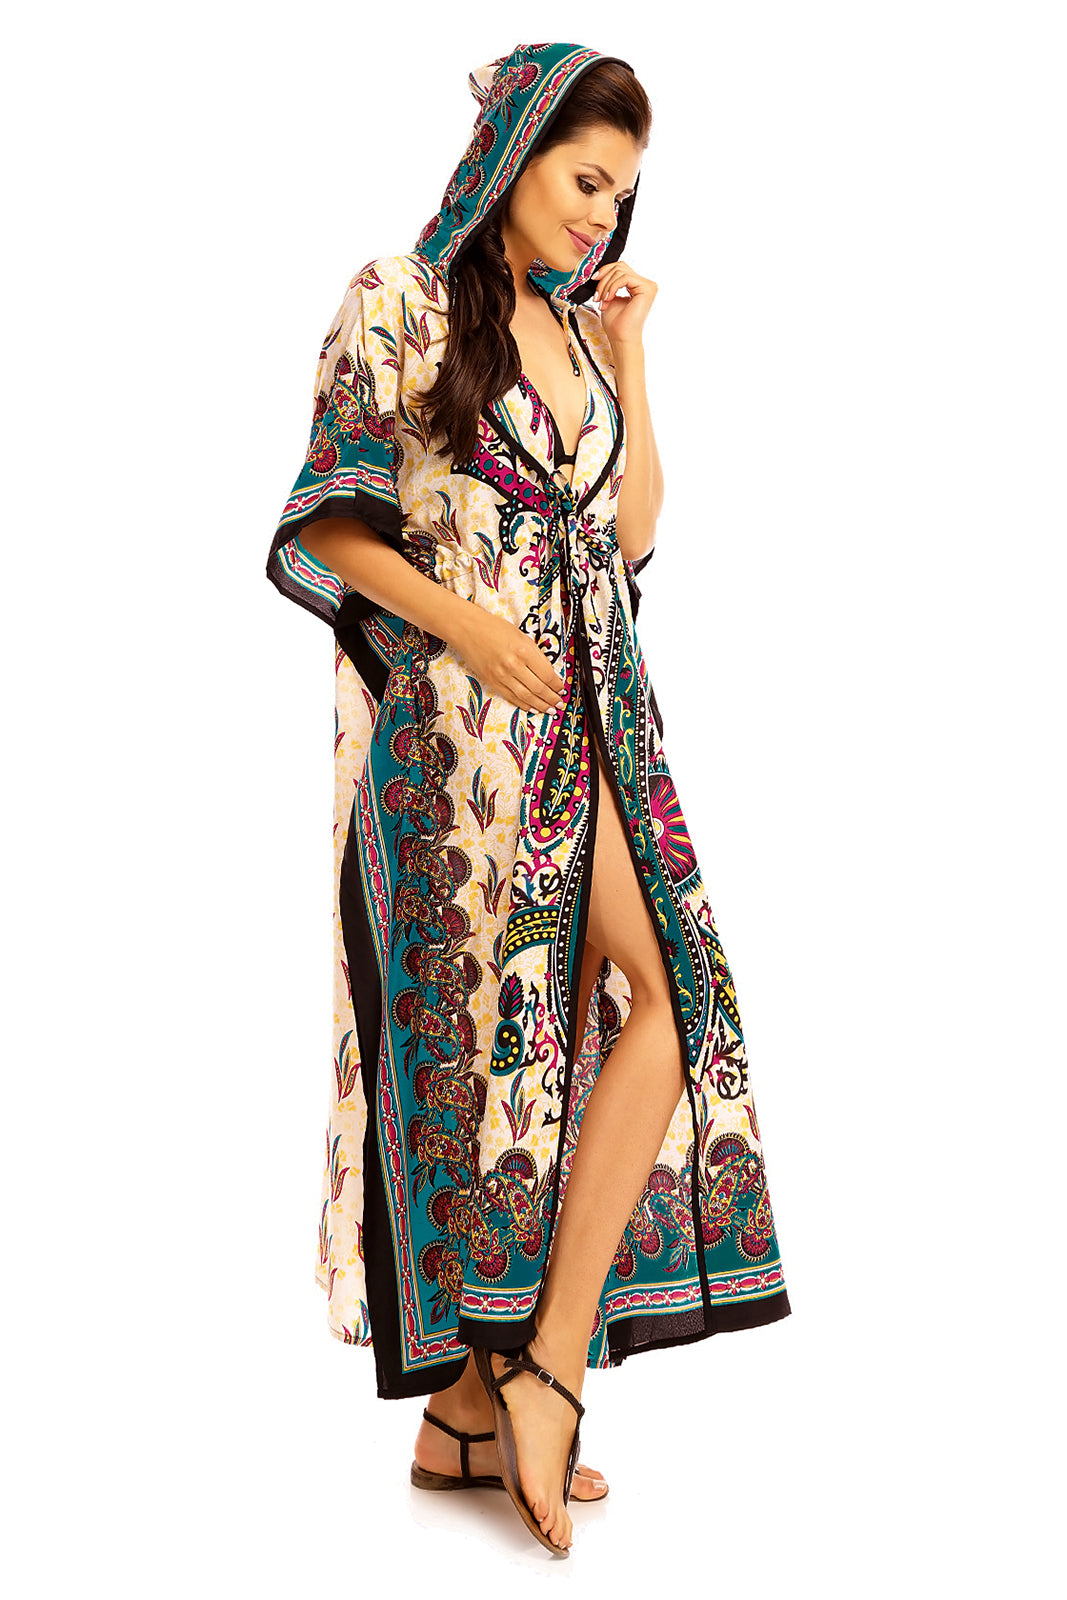 Ladies Hooded Kimono Gown Kaftan in Tribal Print  -  Teal - Pack of 12